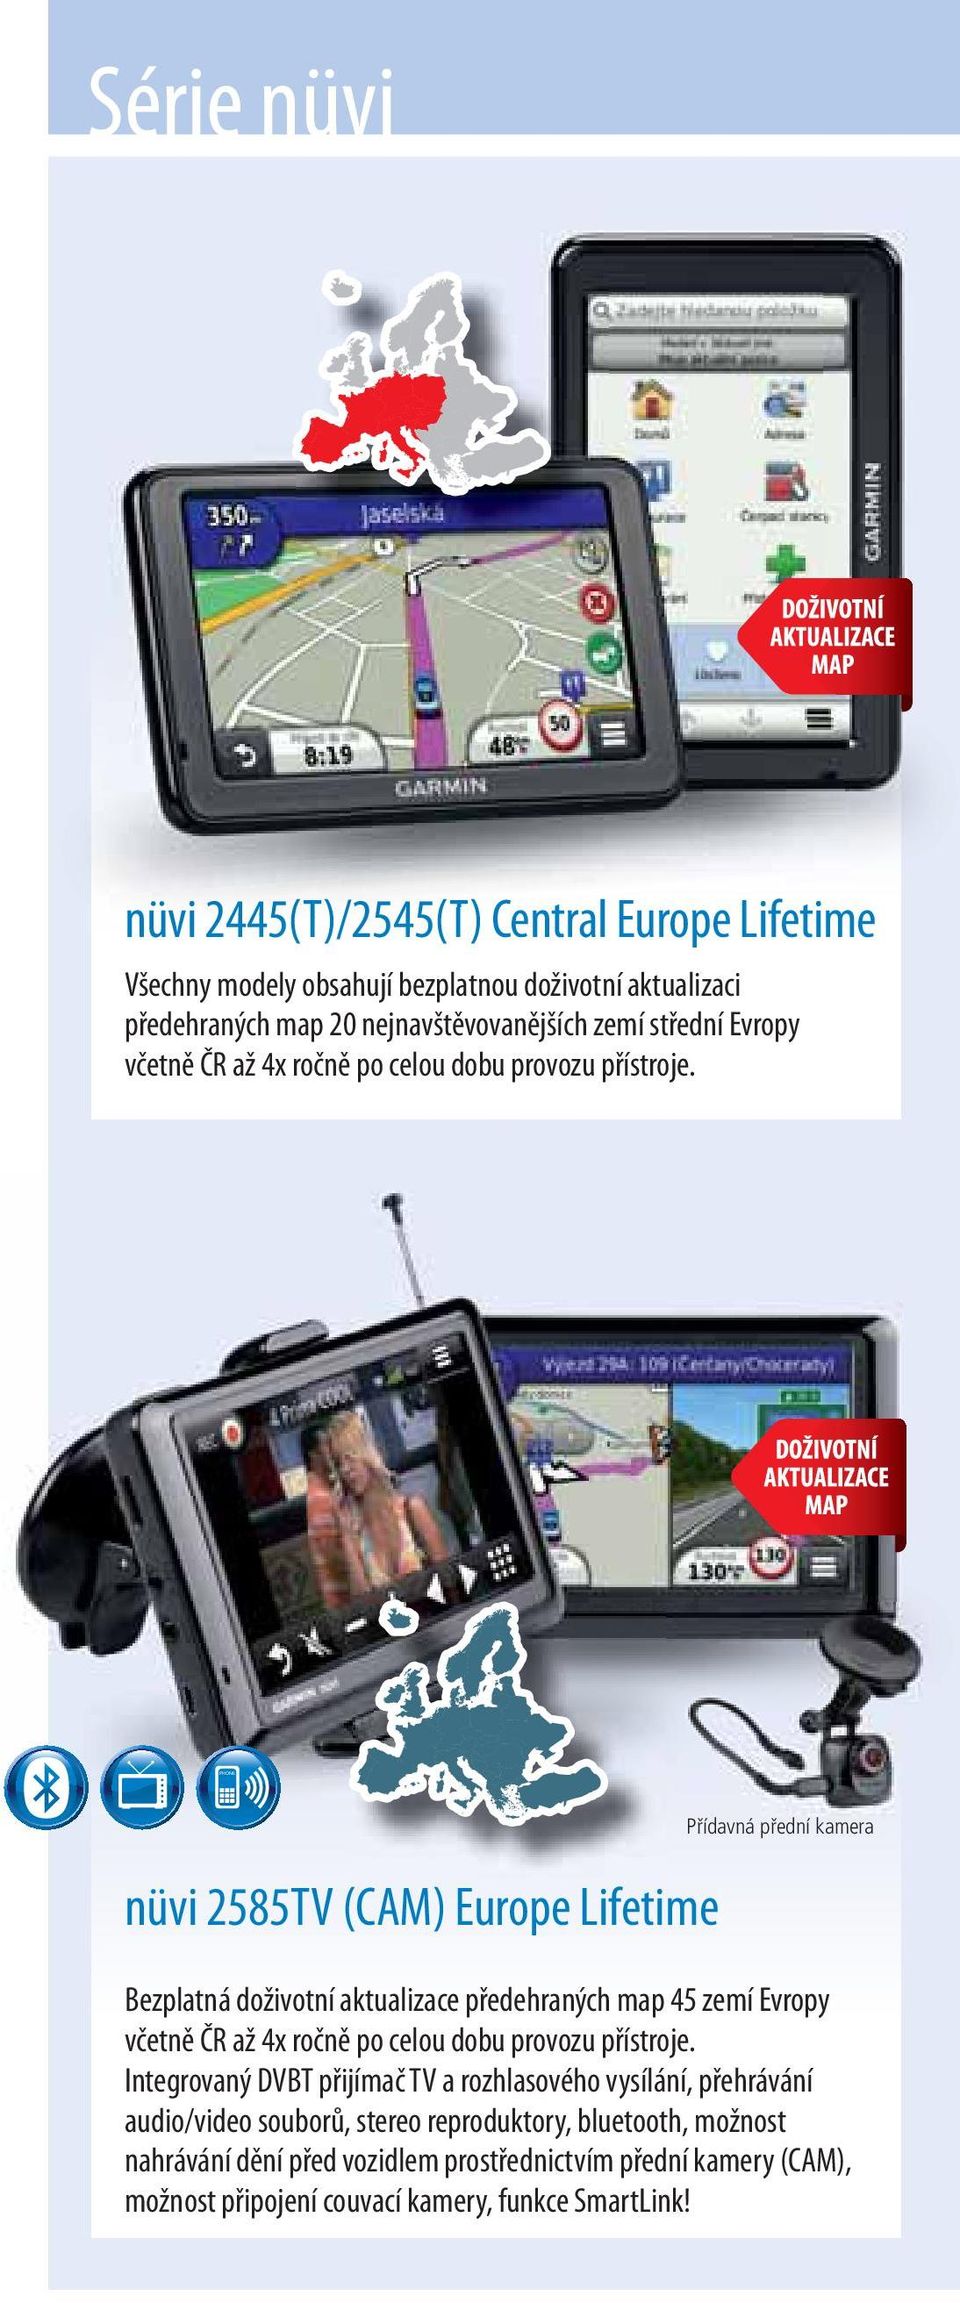 nüvi 2585TV (CAM) Europe Lifetime Přídavná přední kamera Bezplatná doživotní aktualizace předehraných map 45 zemí Evropy včetně ČR až 4x ročně po celou dobu